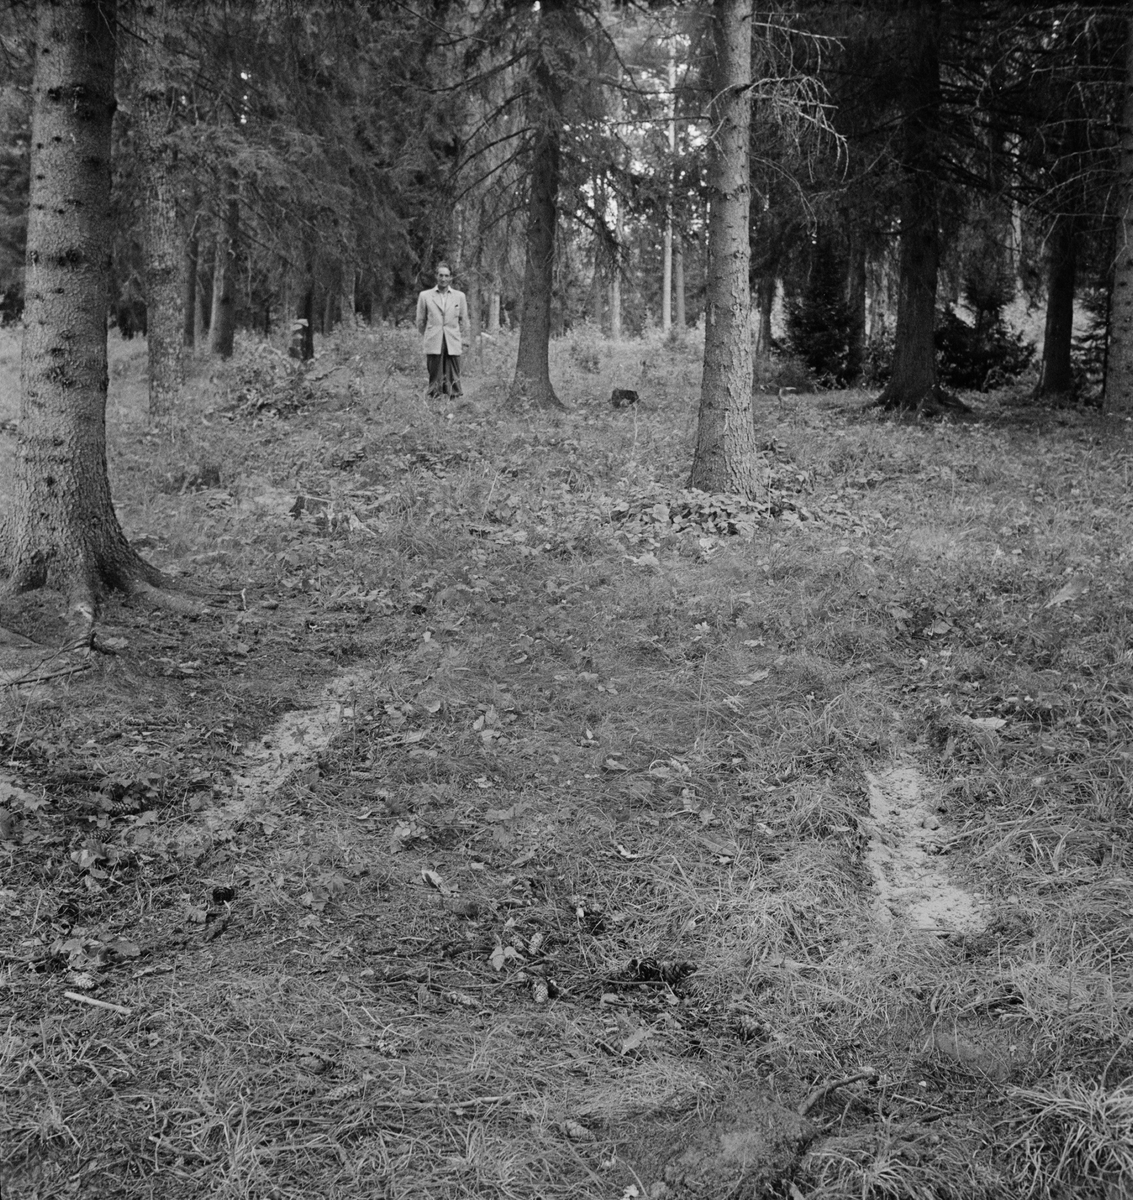 Olycka vid Rosenlund, Uppland 1947